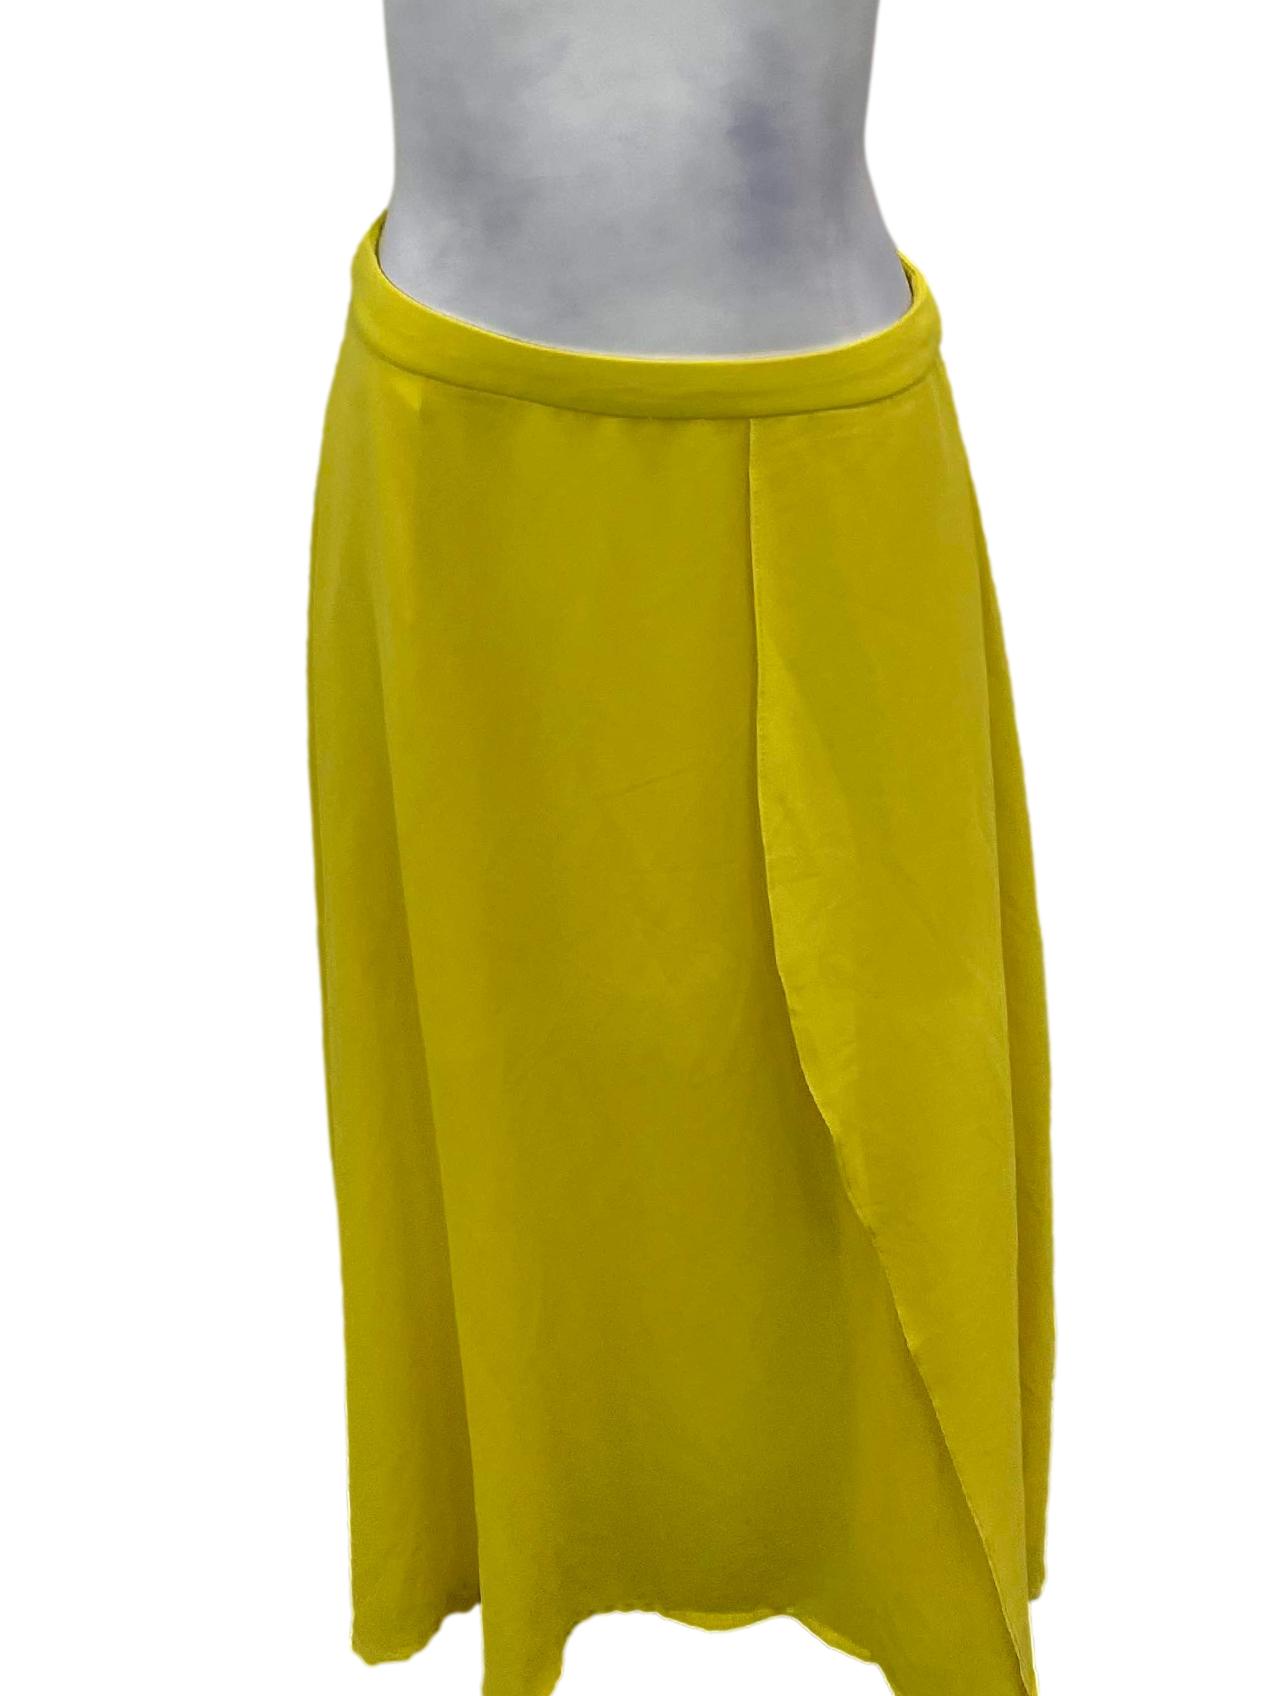 Neon Yellow Tube Skirt